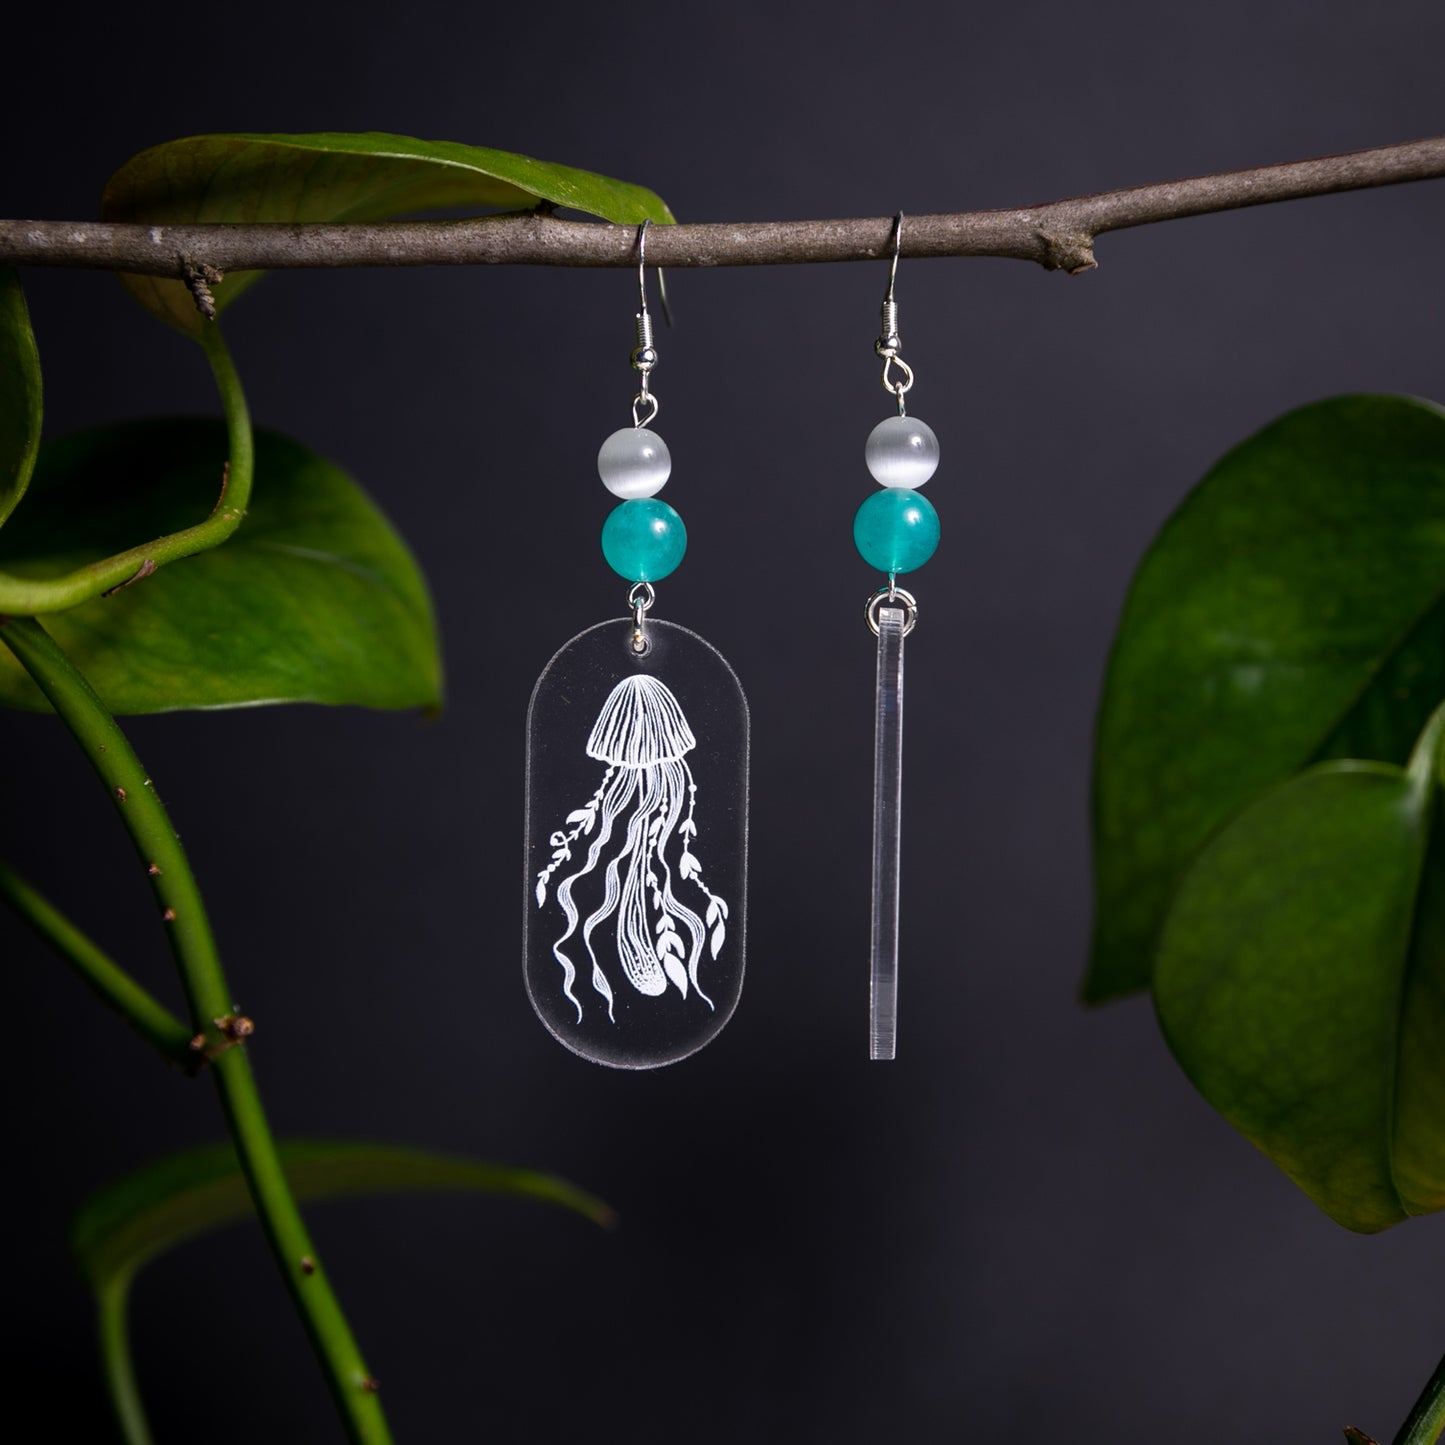 Crystal Clear Acrylic Earrings - Jellyfish